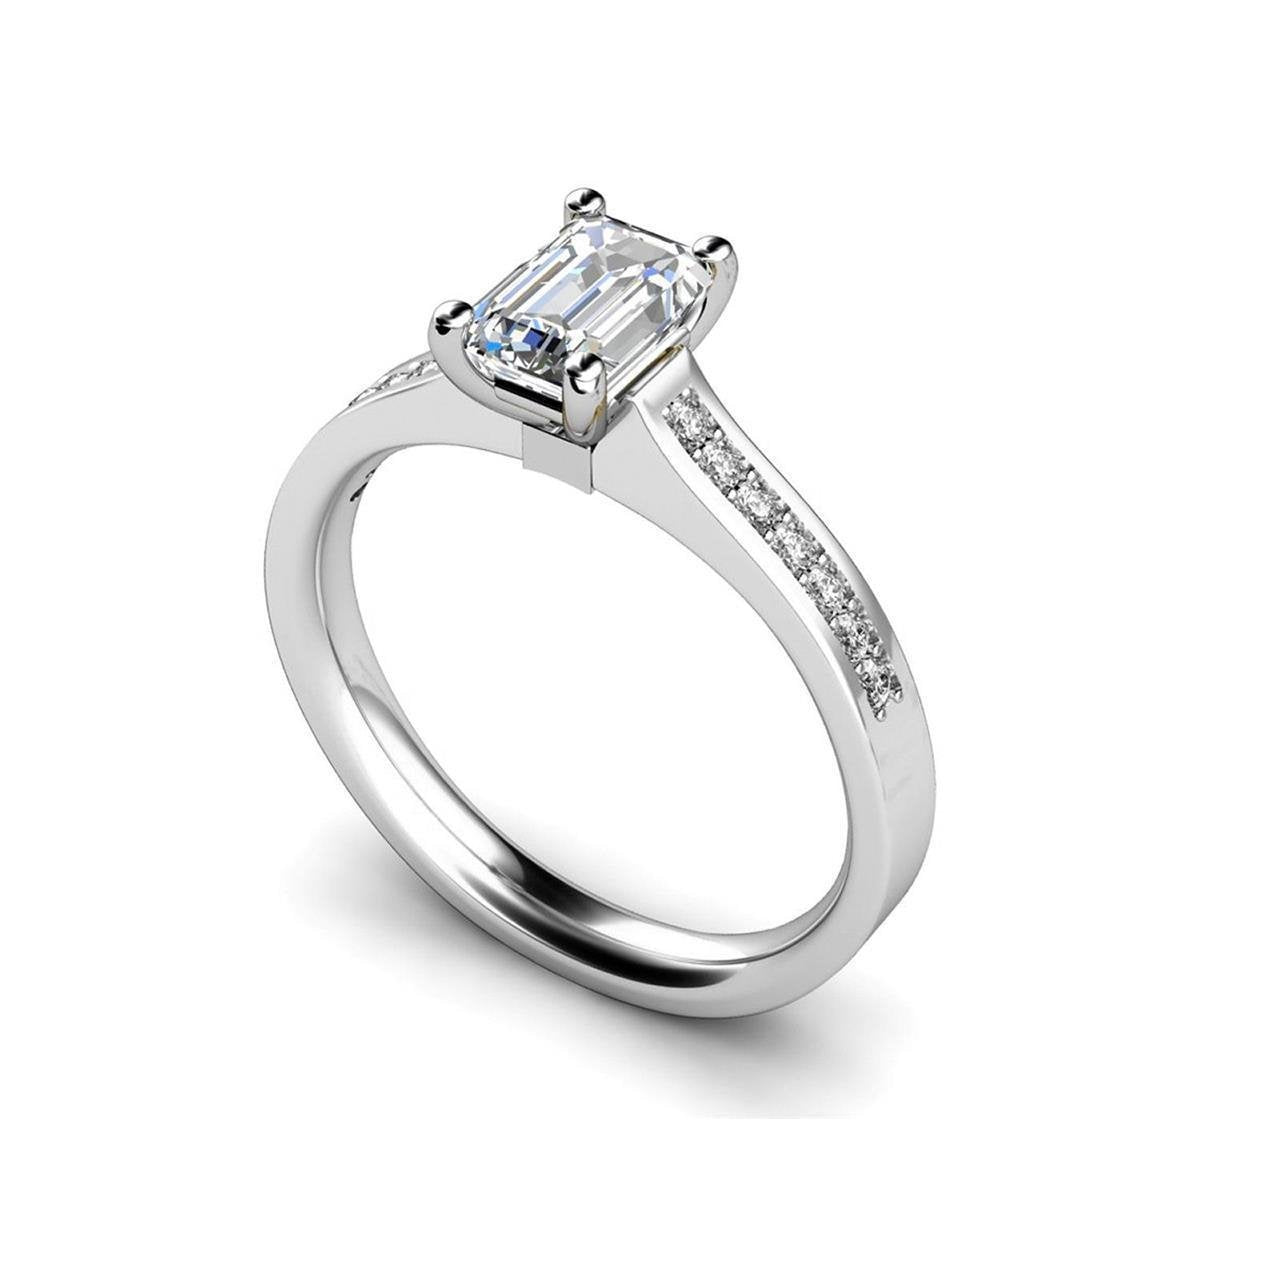 Anello di fidanzamento con smeraldo scintillante e diamante taglio rotondo da 1,51 ct - harrychadent.it